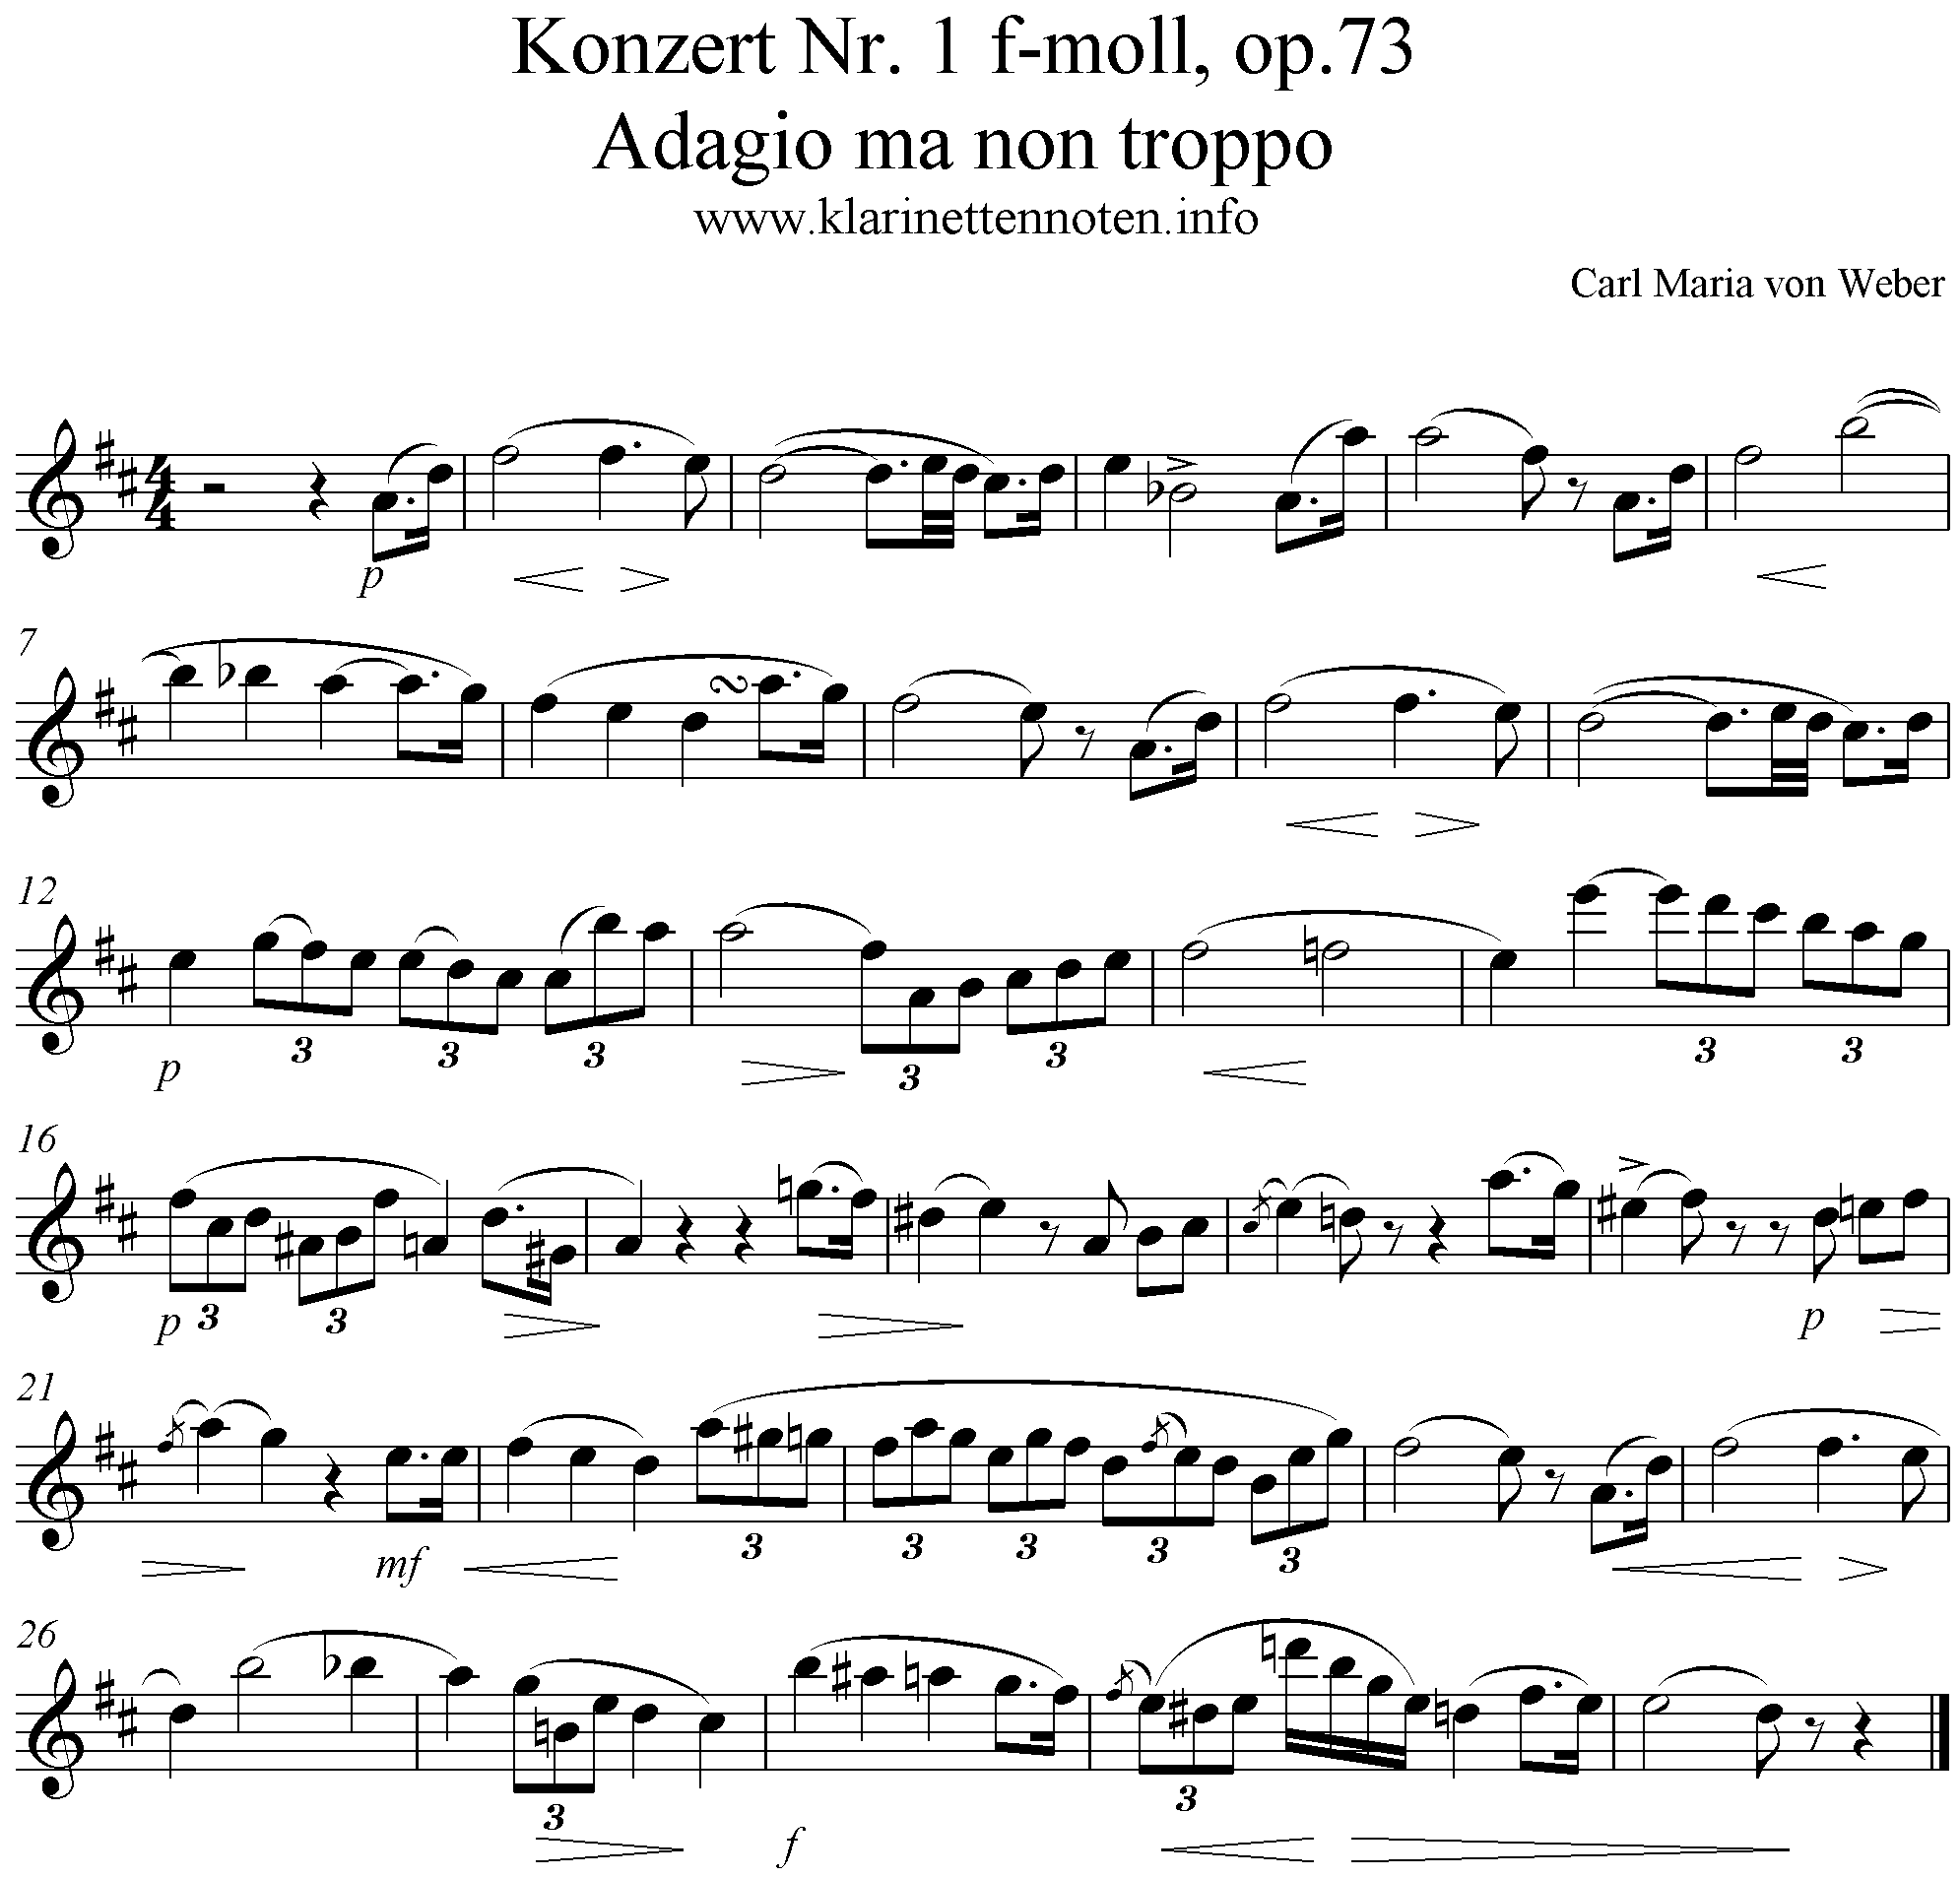 Weber op.73/2 Adagio ma non troppo Clarinet Part, Klarinette